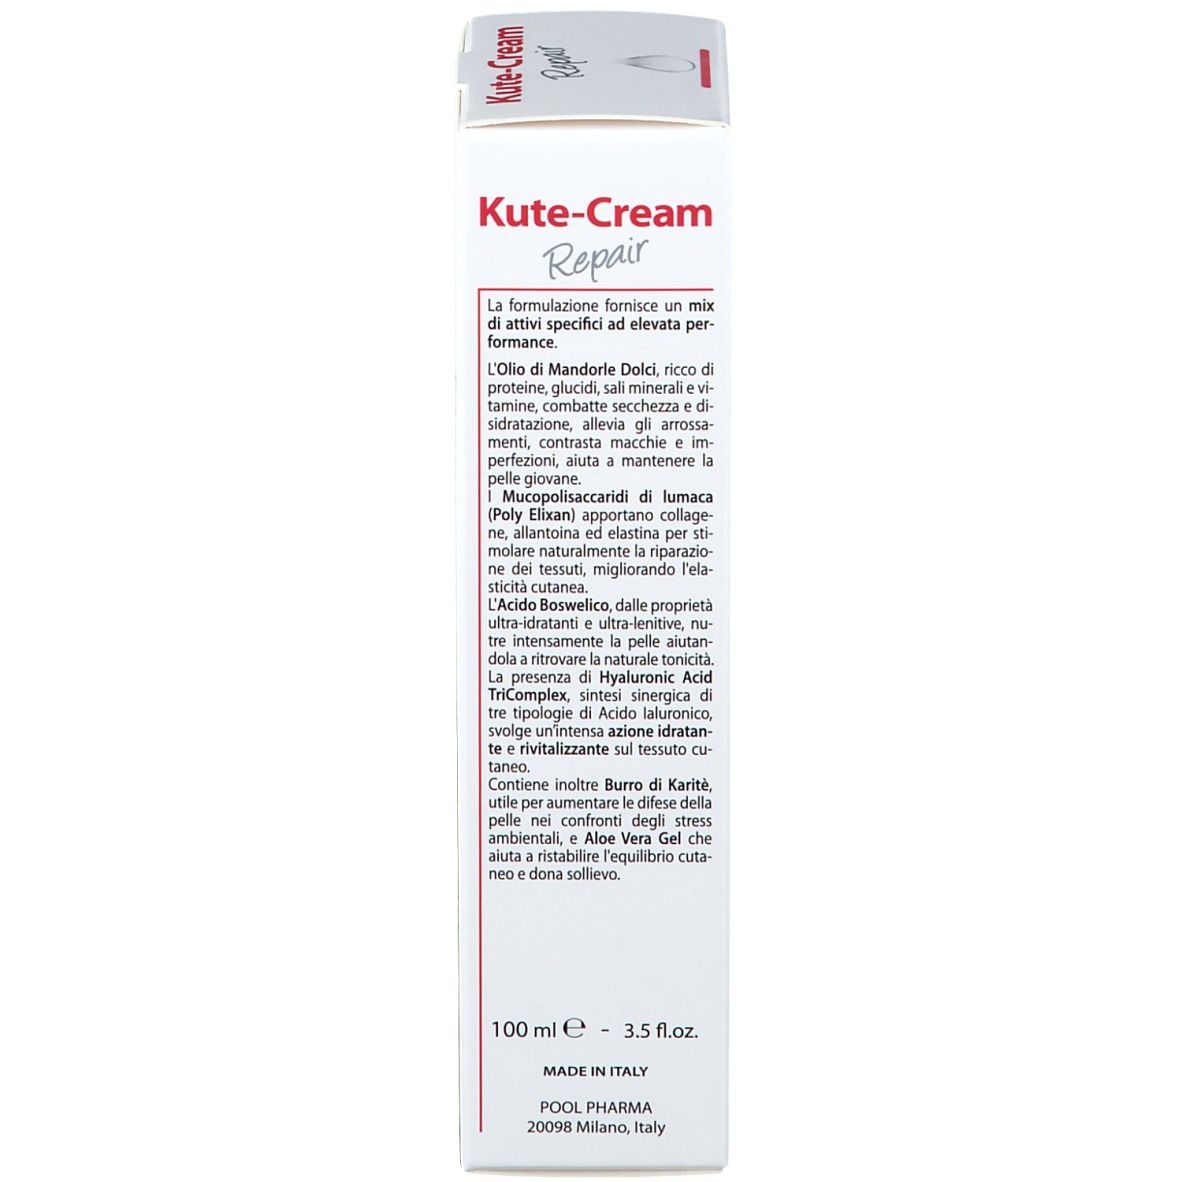 Kute-Cream Repair Viso Mani Corpo